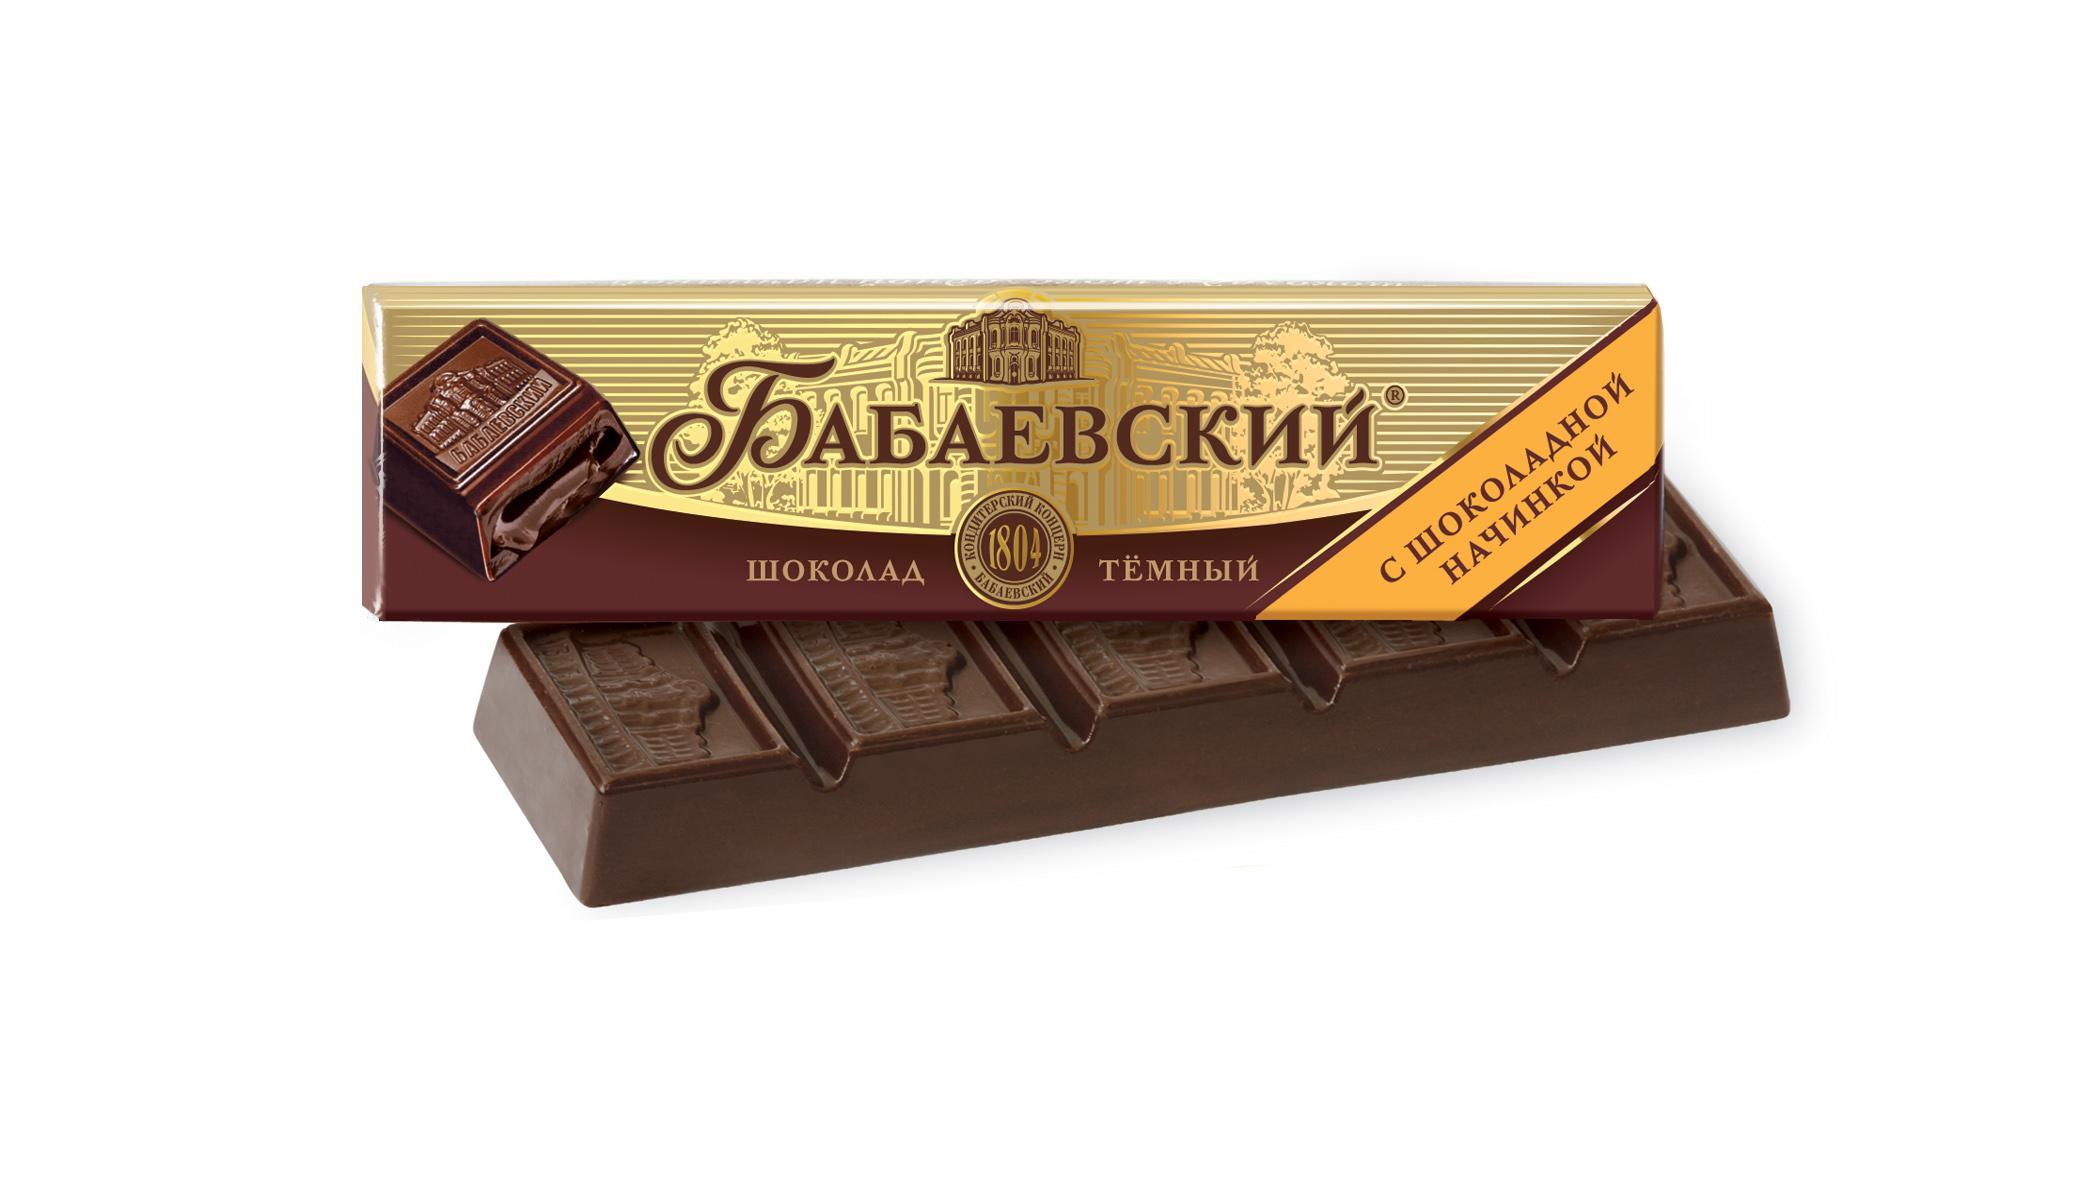 Шоколад Бабаевский с шоколадной начинкой 50 гр., обертка